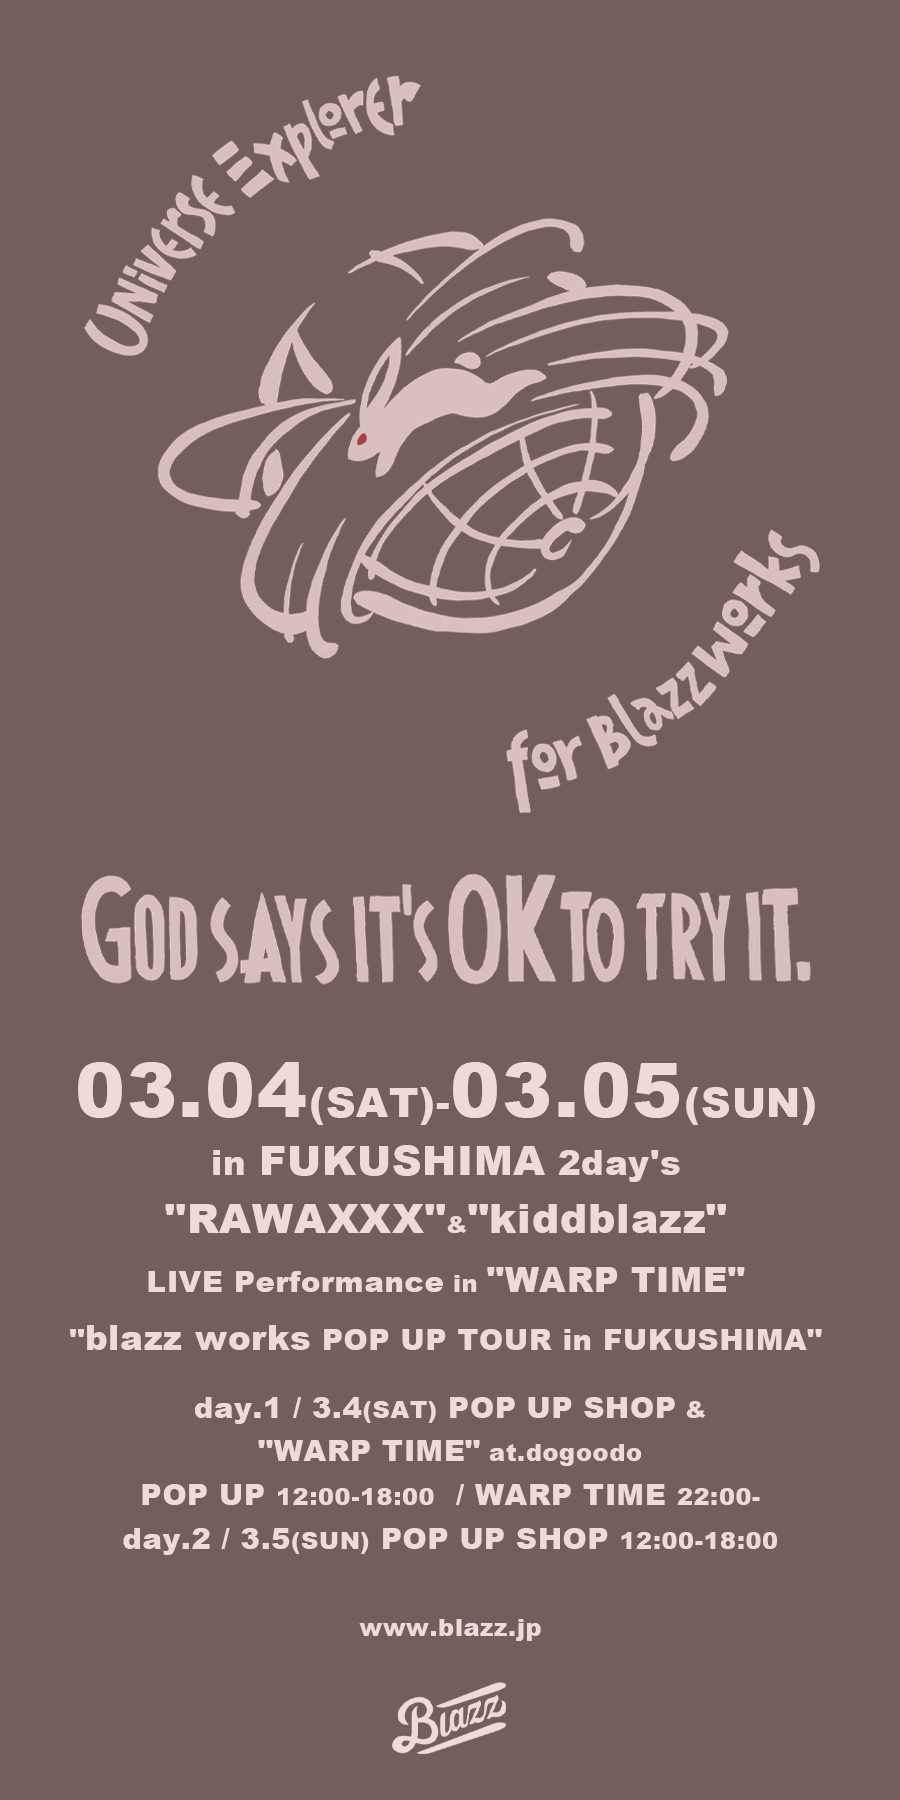 03.04(SAT)-03.05(SUN) in FUKUSHIMA 2day's